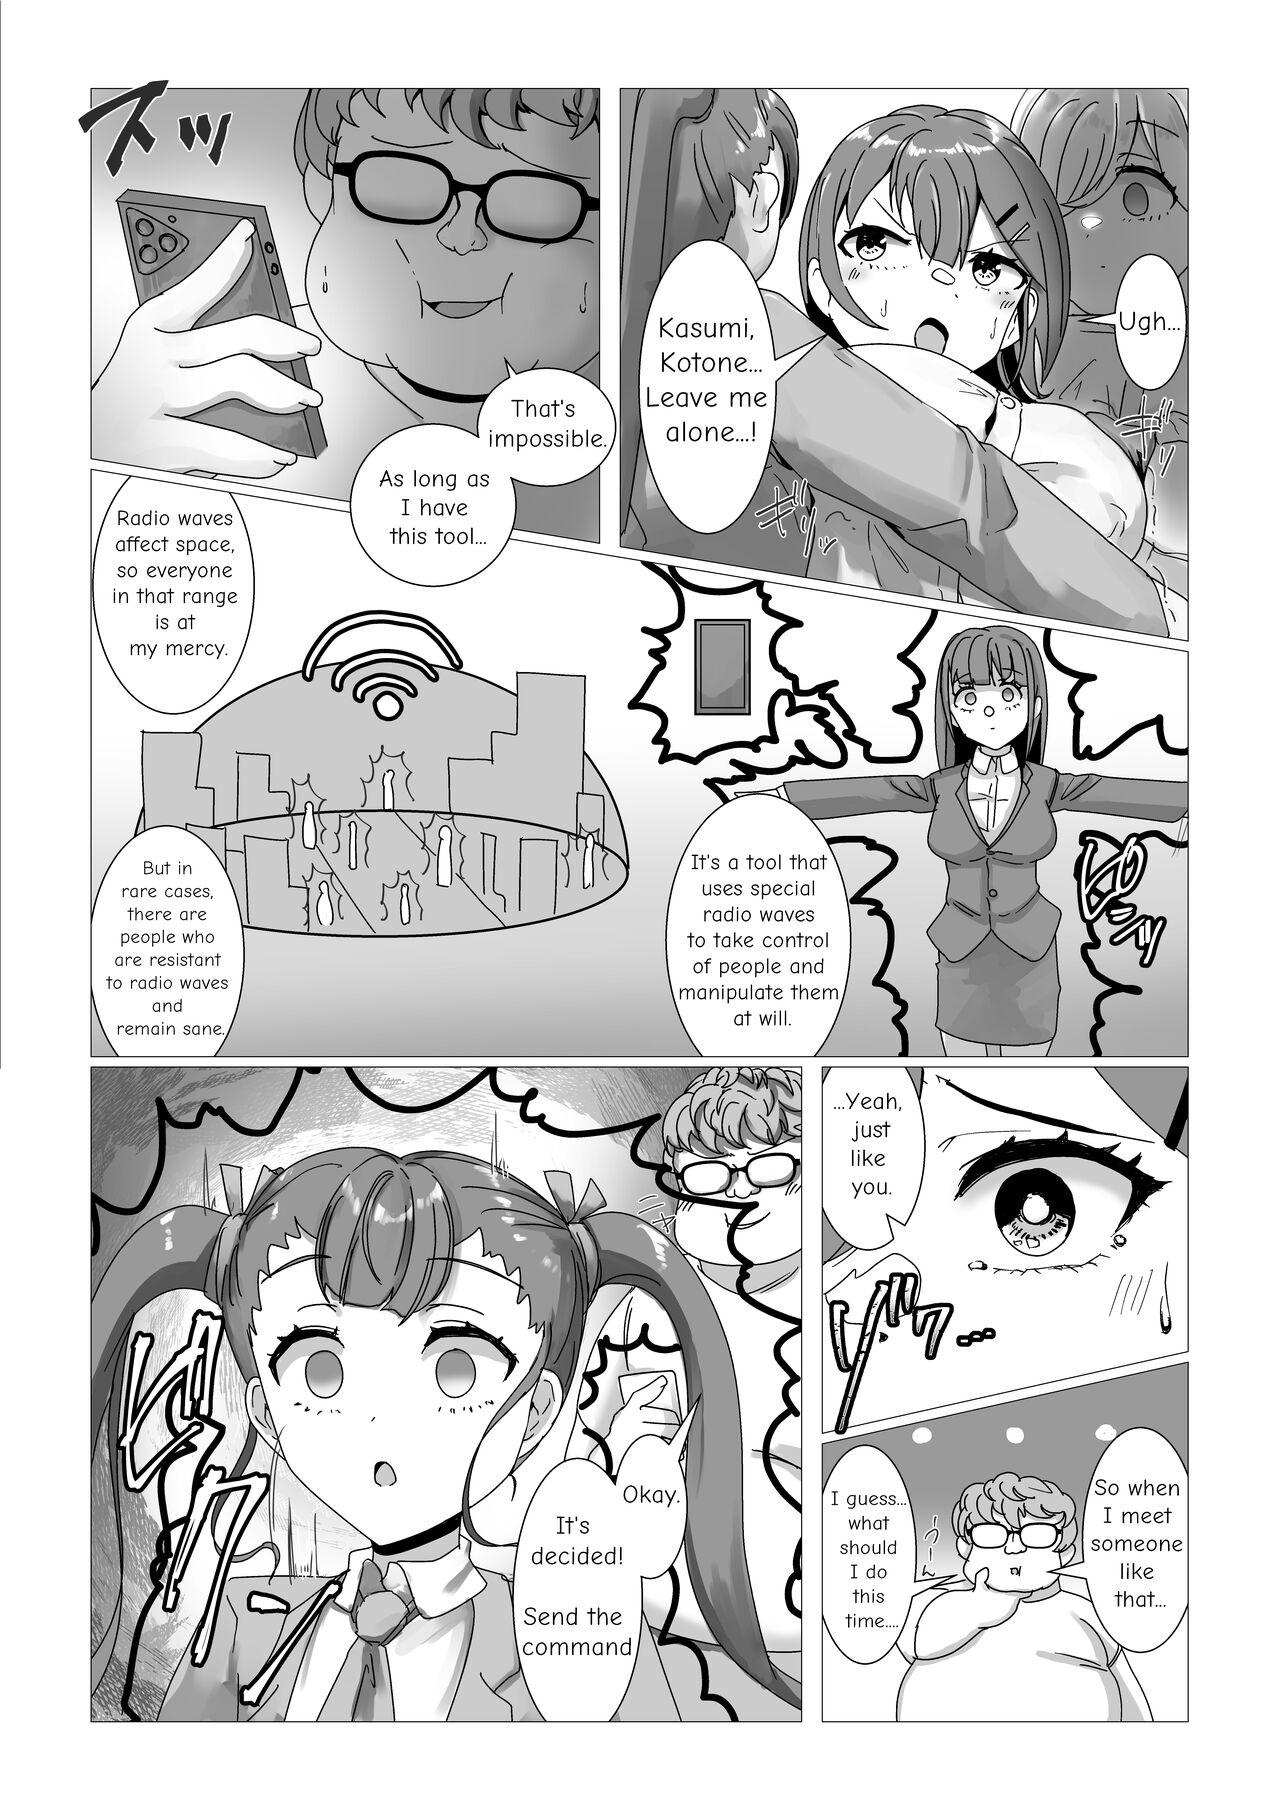 Spy Sennou Densha - Original Culos - Page 7